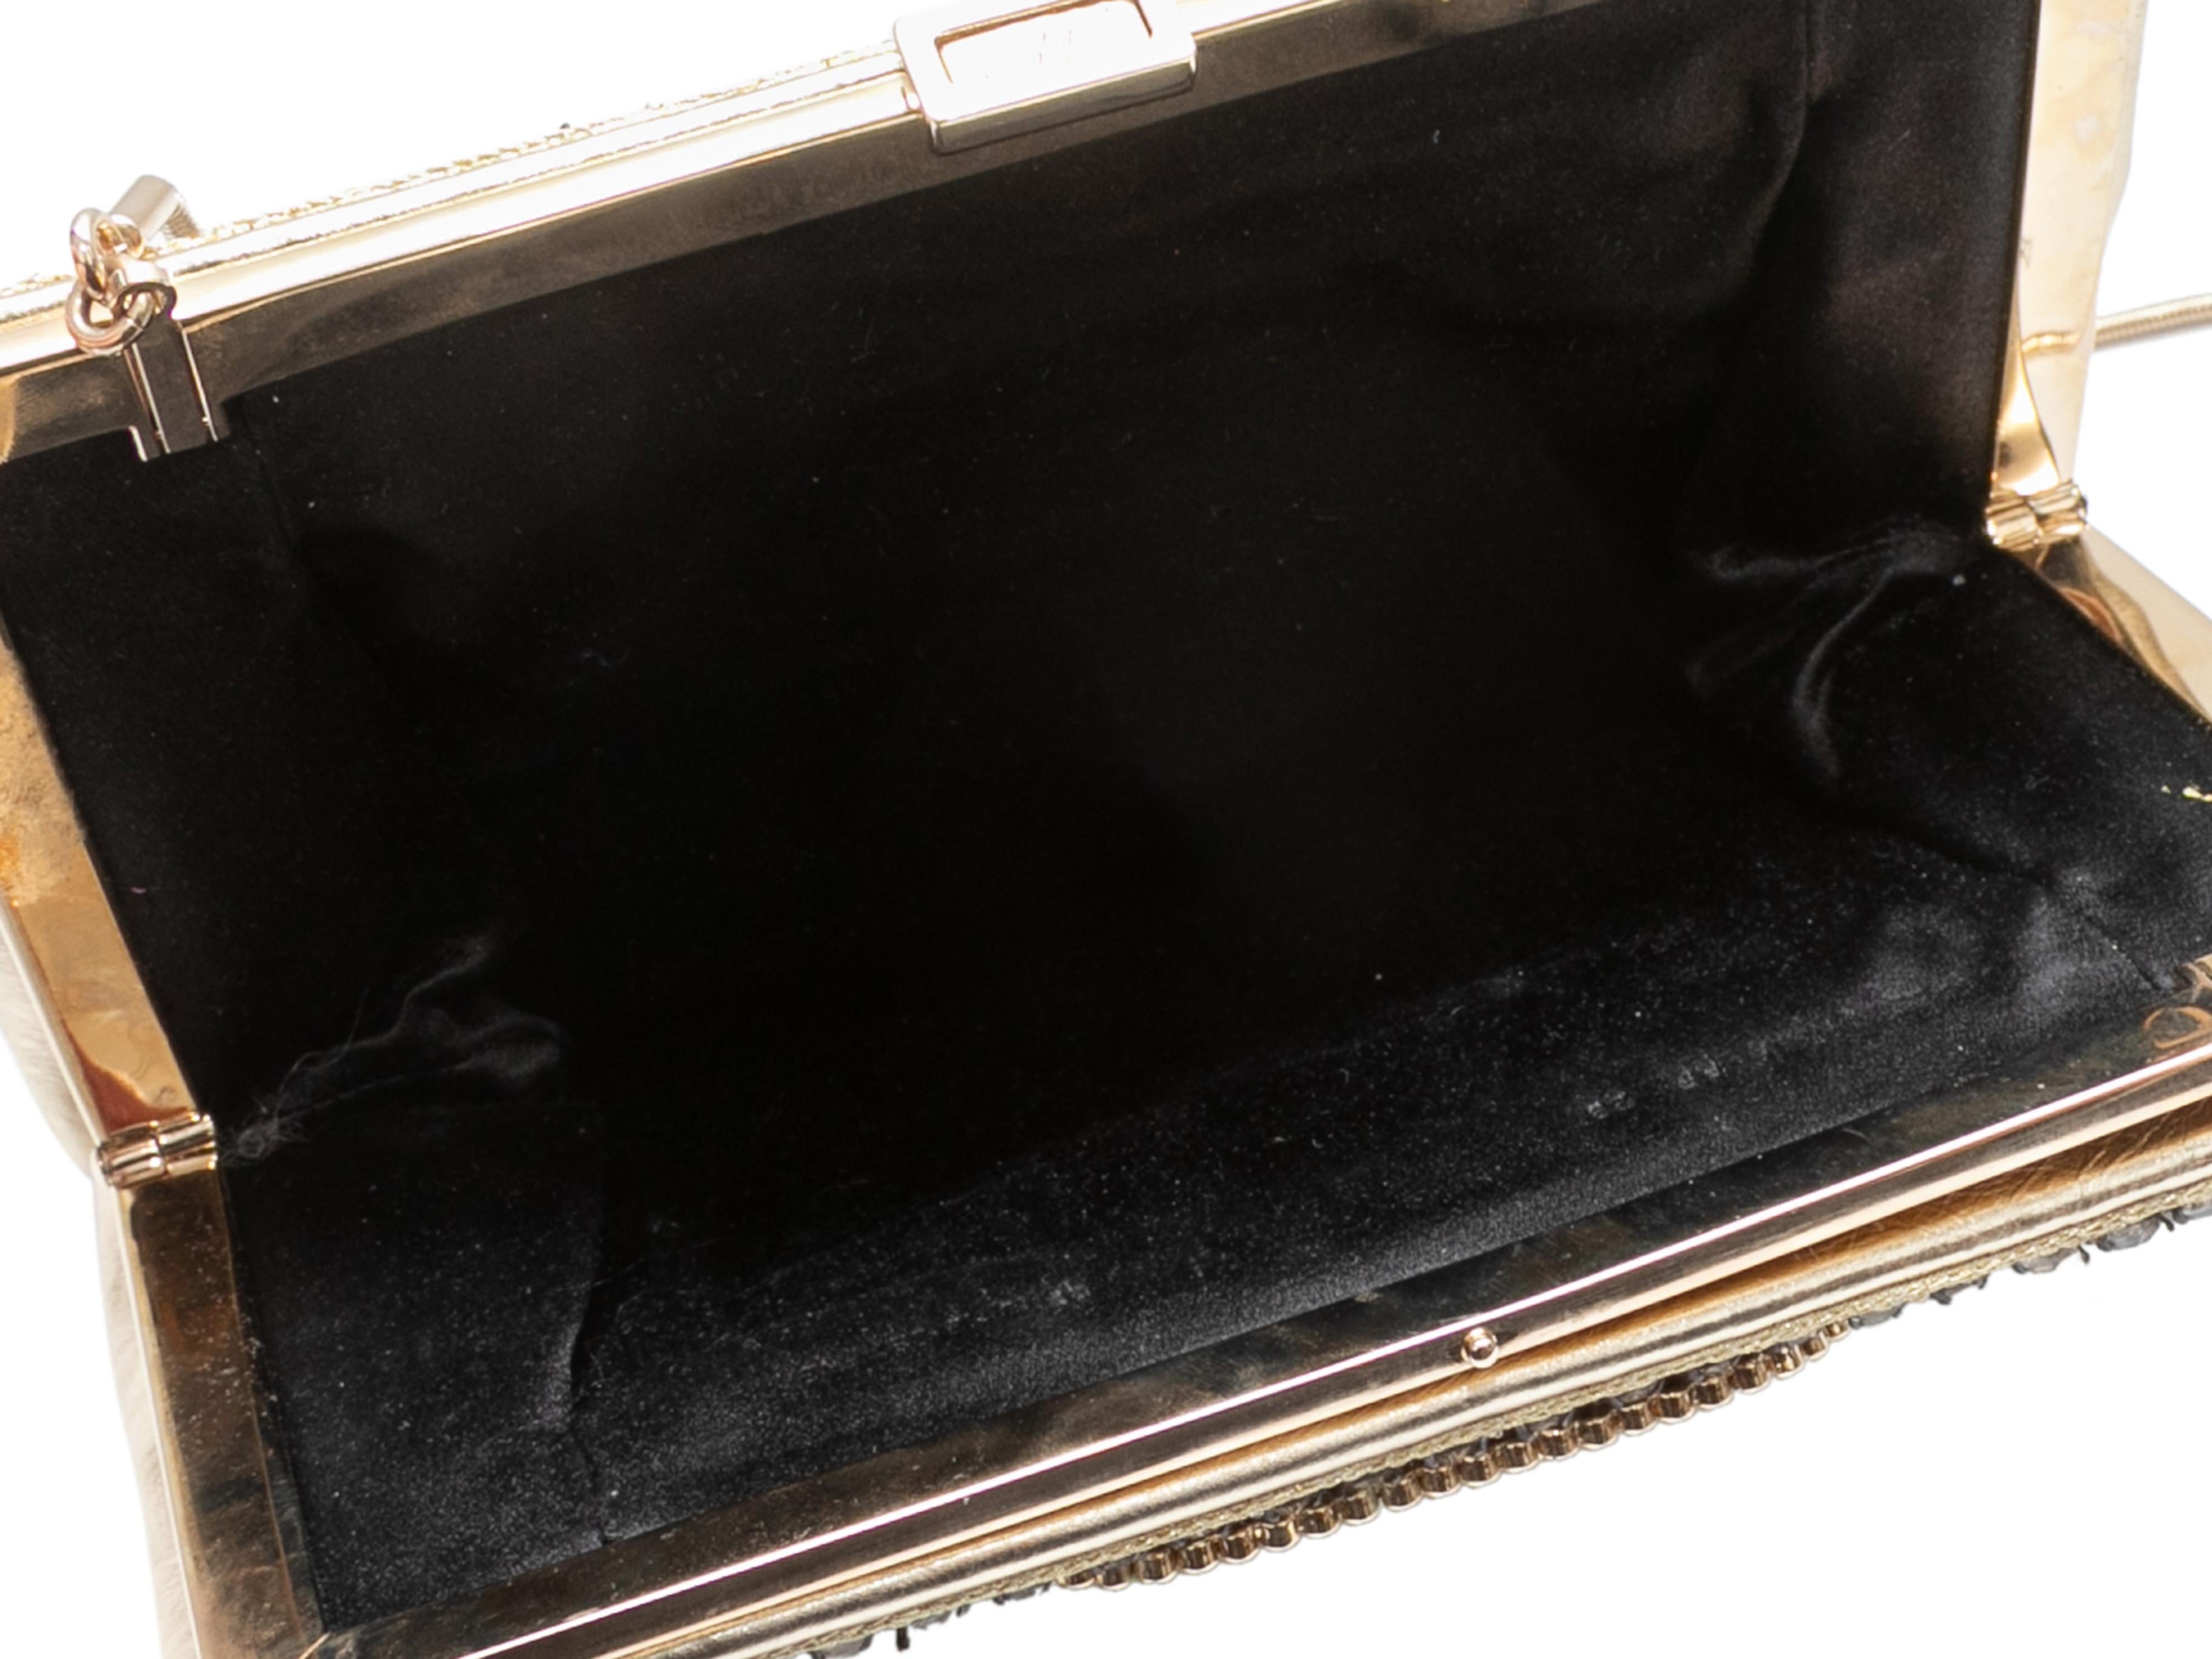 Sac de soirée en cristal argenté Roger Vivier. Ce sac est composé de cuir doré et de cristaux, d'accessoires dorés, d'une seule bandoulière et d'un fermoir sur le dessus. 8.25